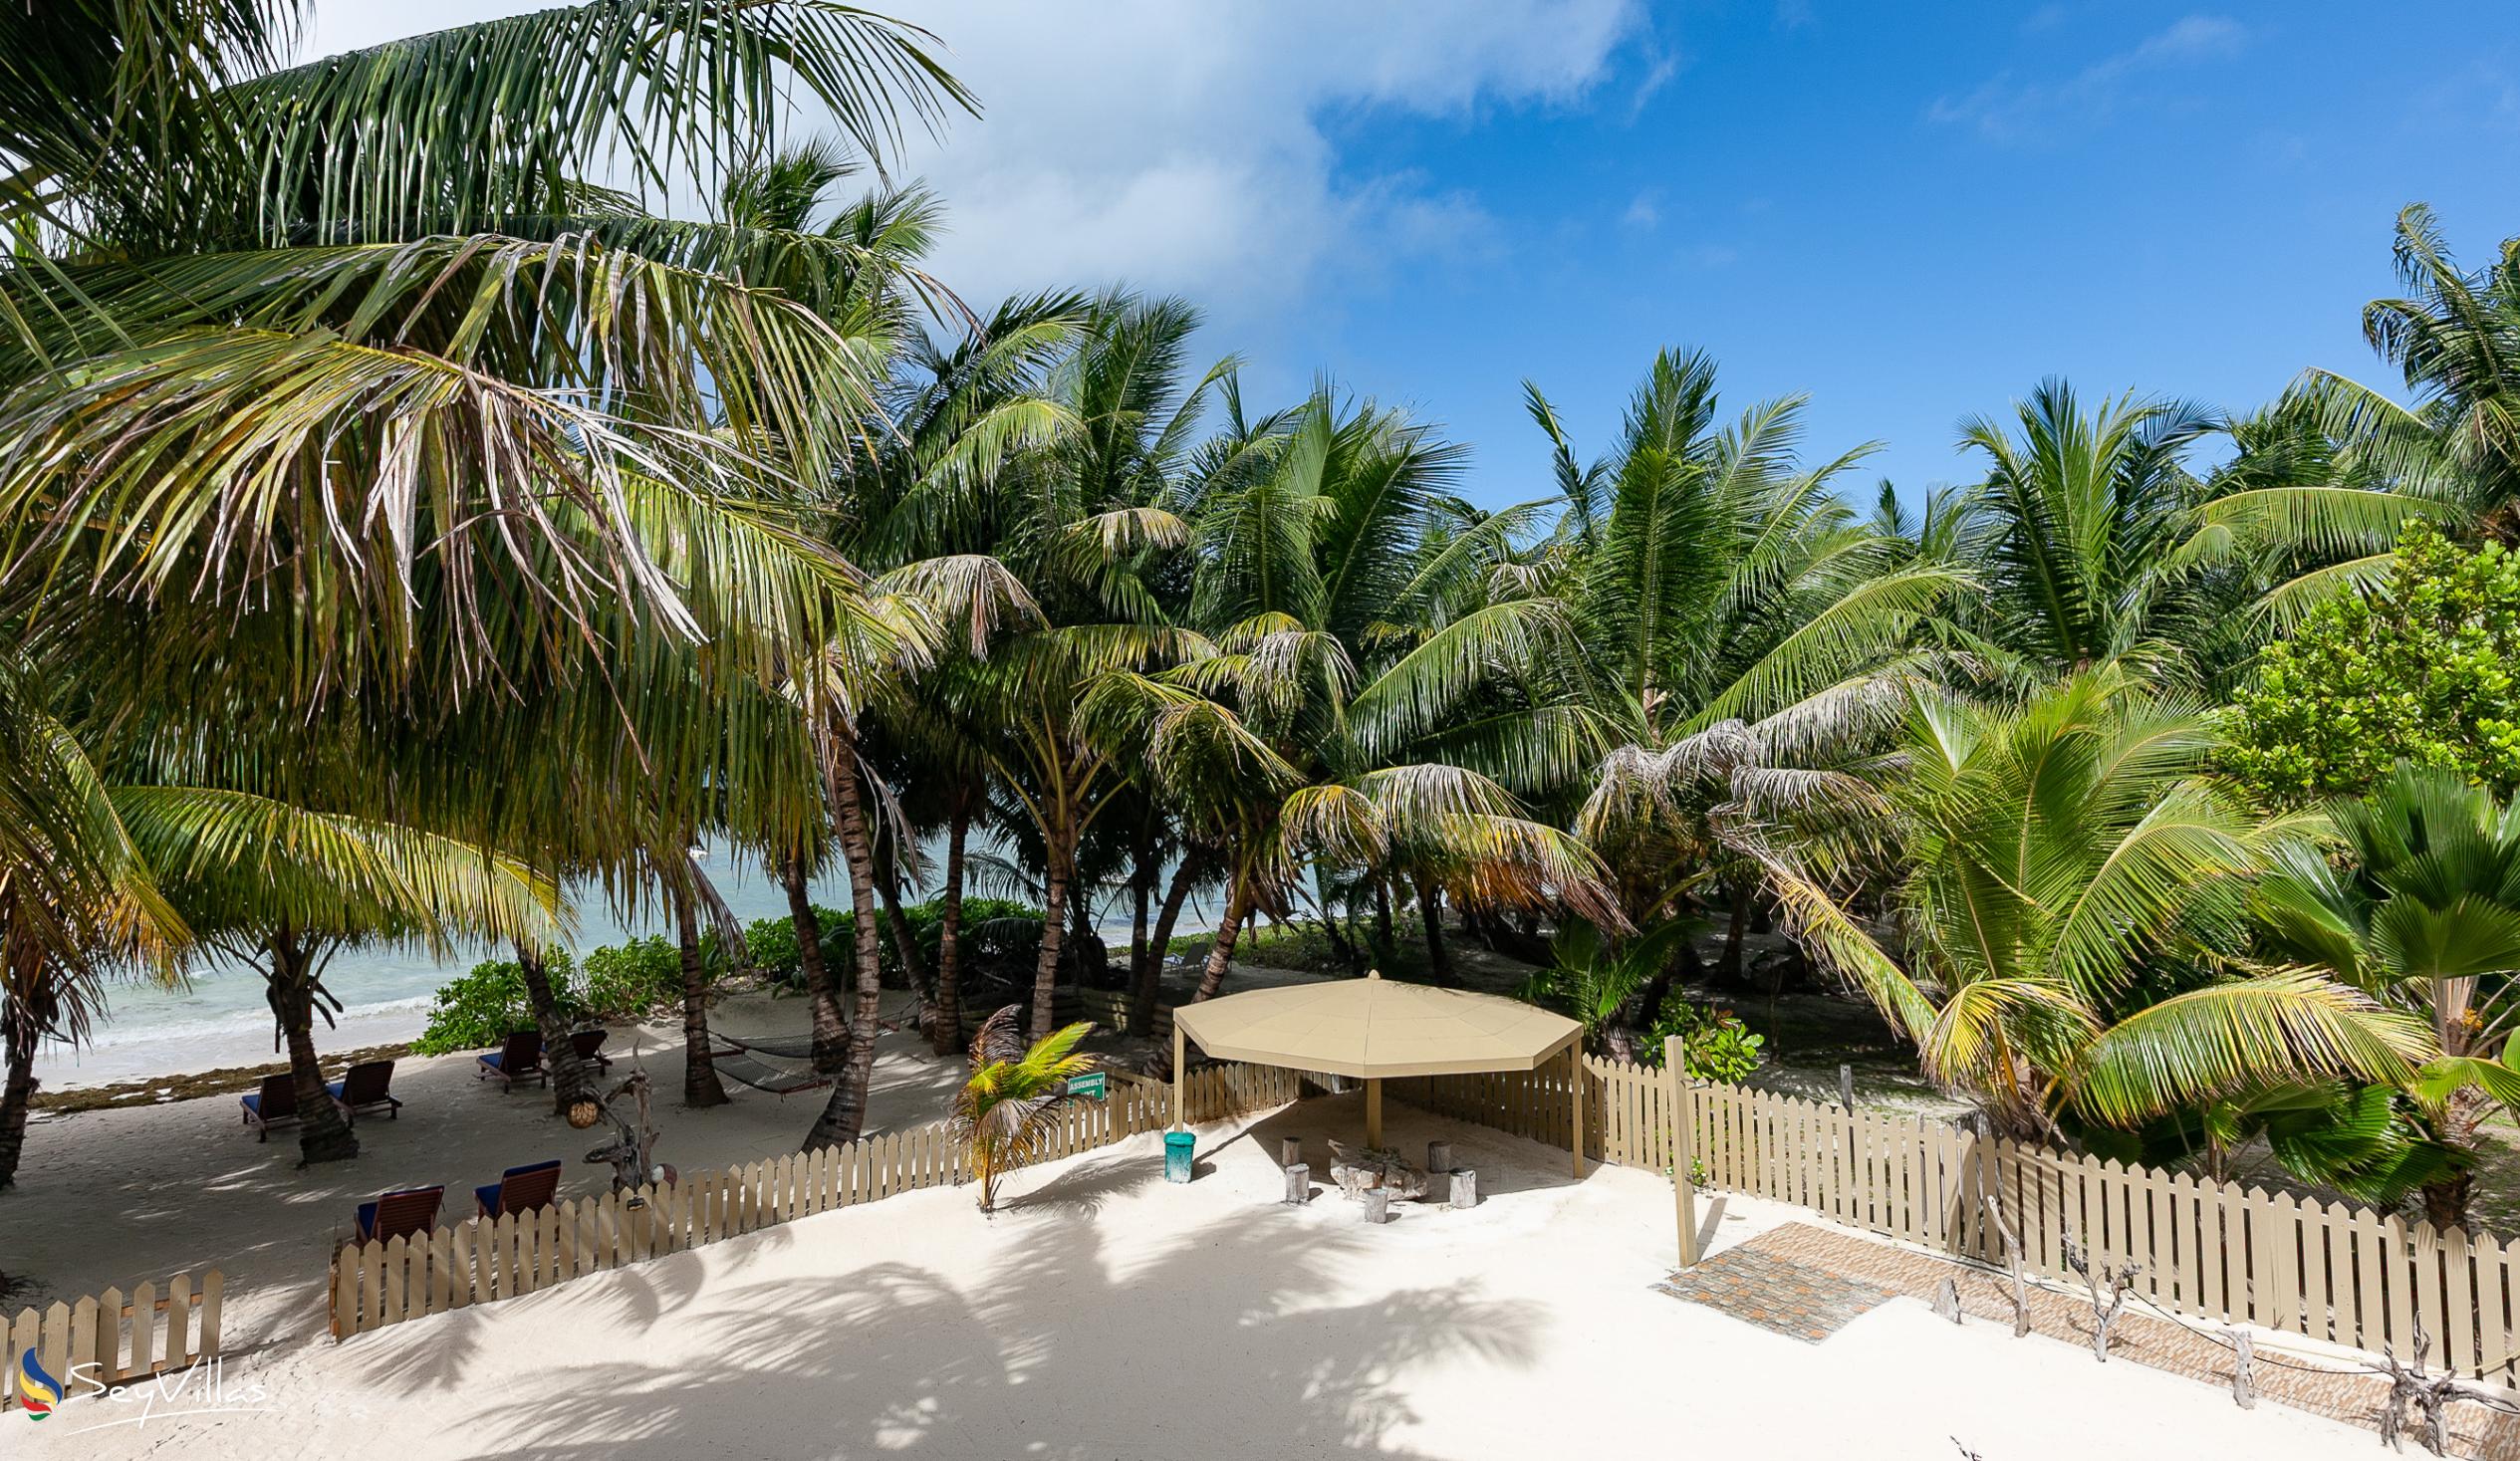 Photo 7: Seashell Beach Villa - Outdoor area - Praslin (Seychelles)